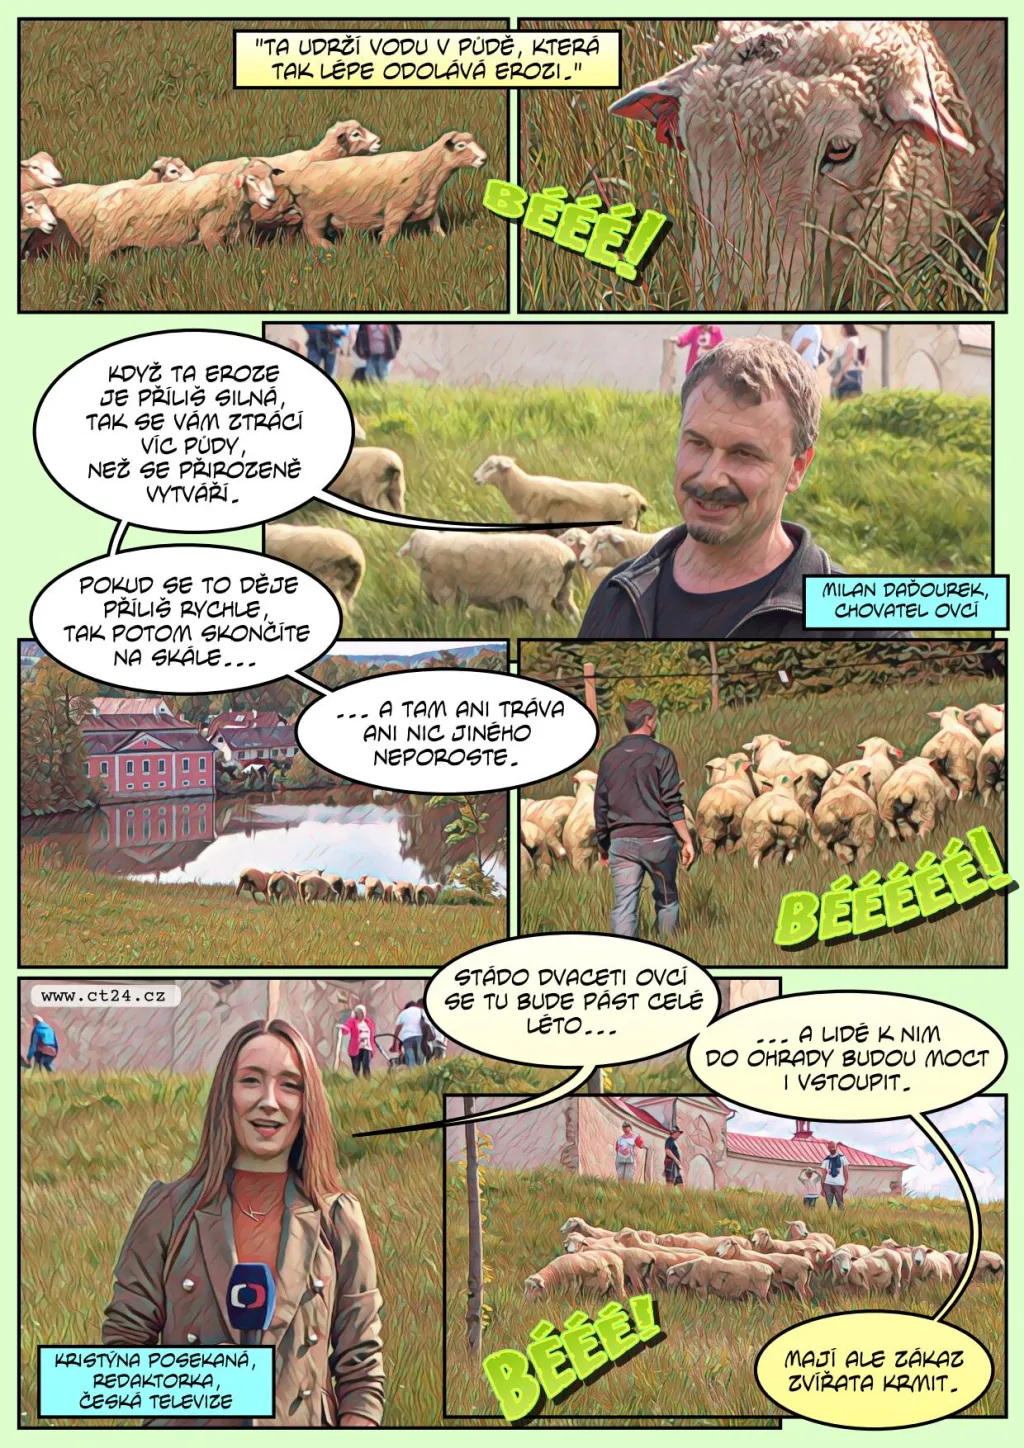 Na Zelenou horu se vrátily ovce. Mají pomoci se spásáním trávy i lákáním turistů